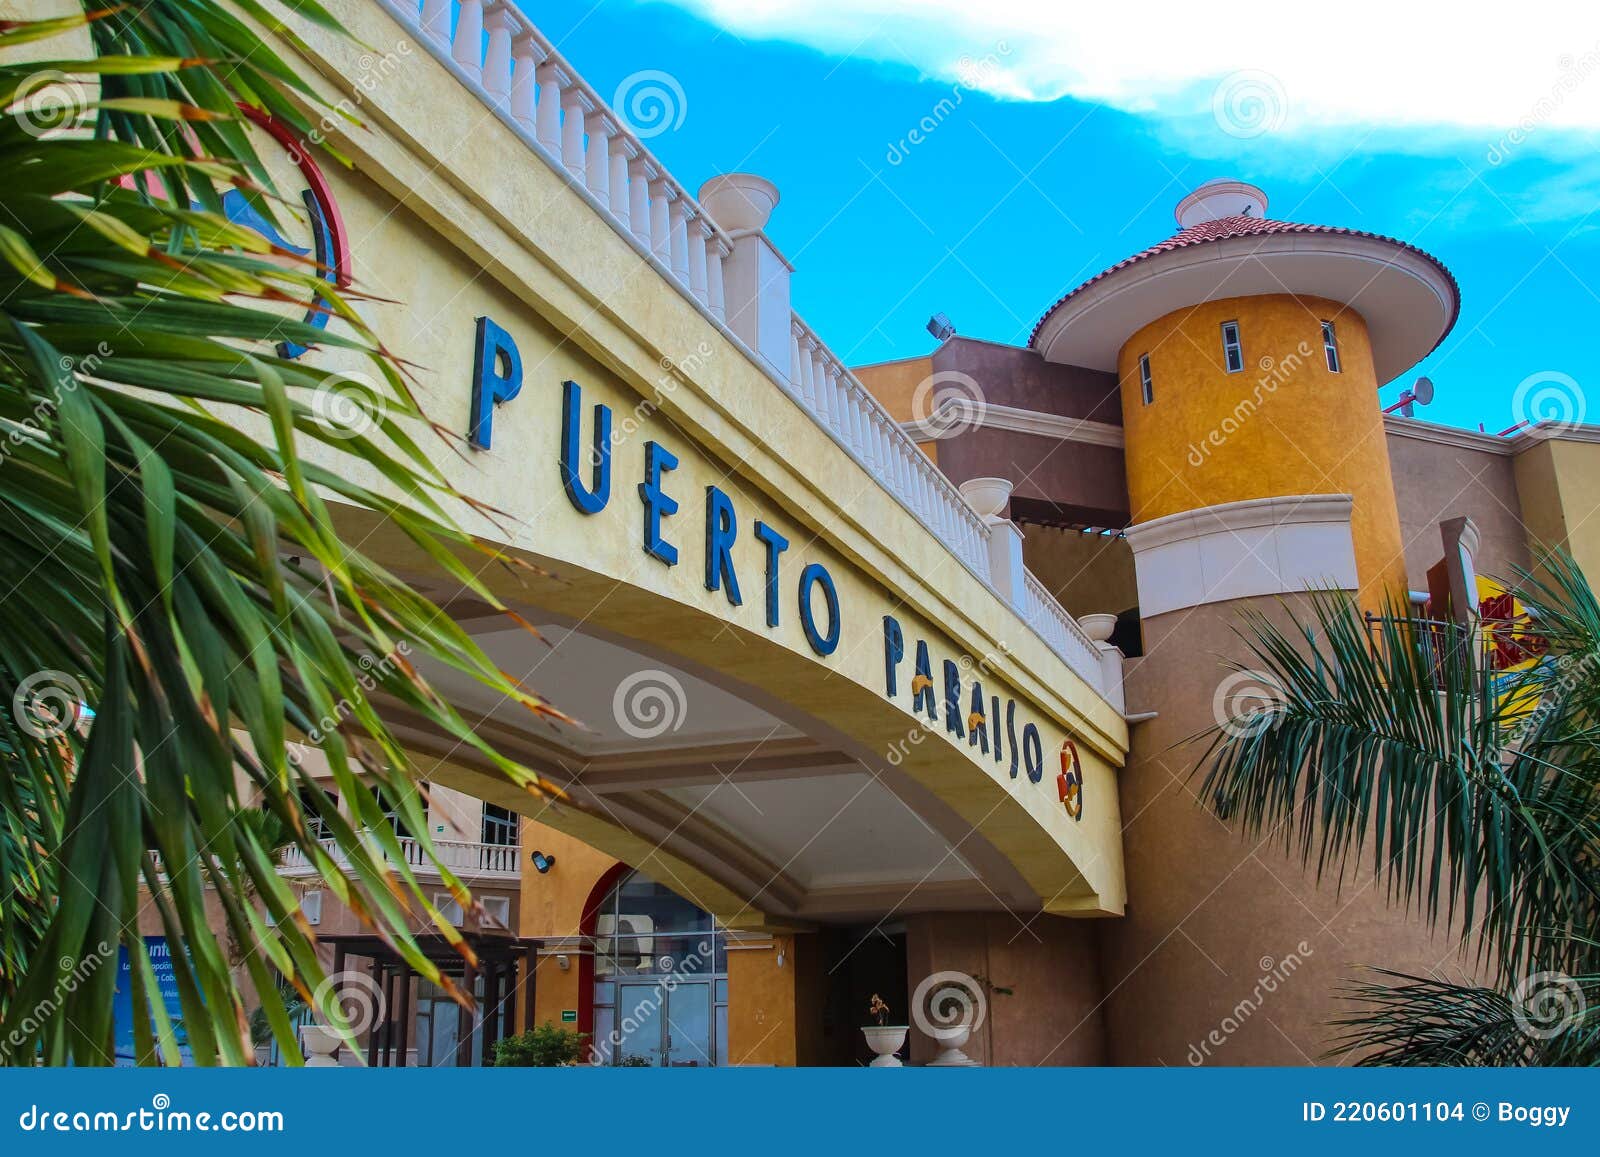 Puerto Paraiso Shopping Mall At Cabo San Lucas Mexico Editorial Stock